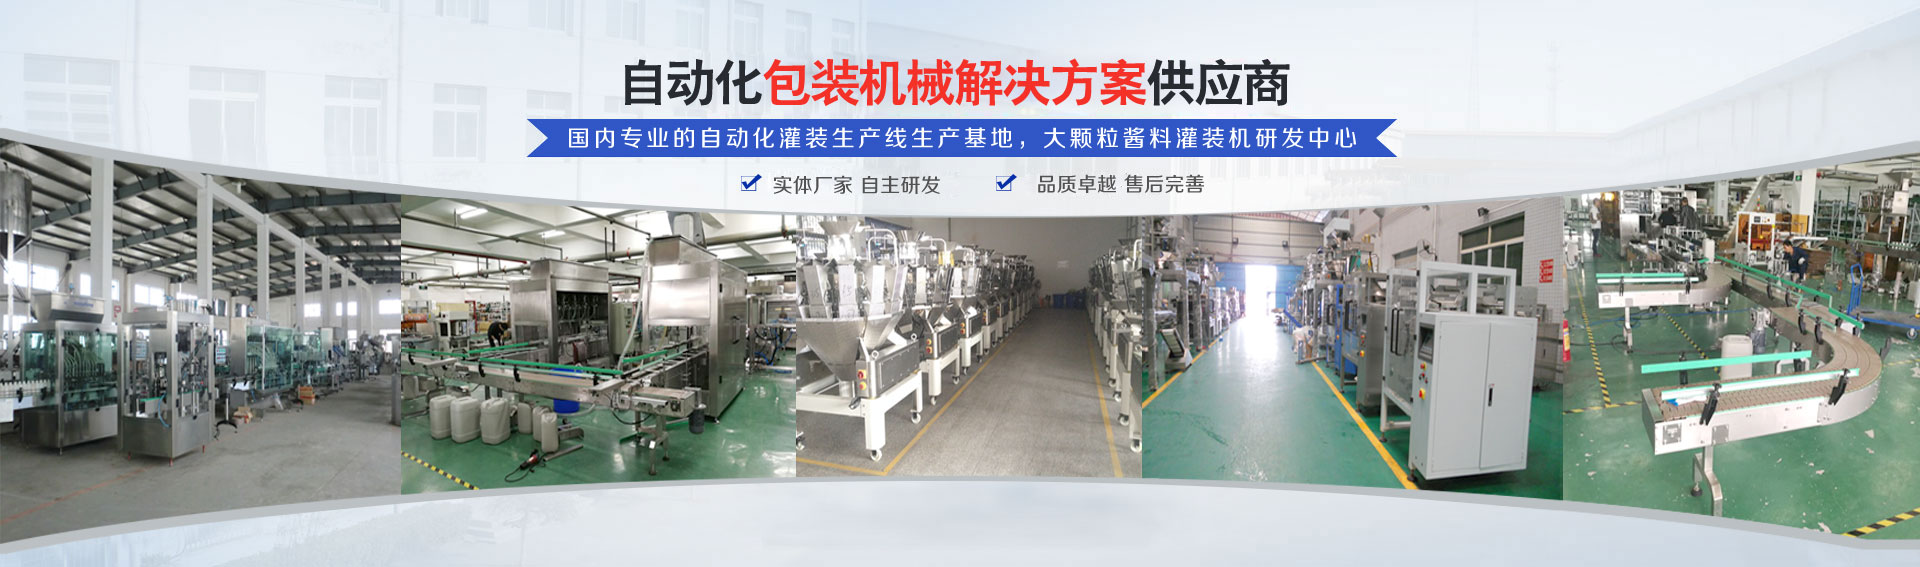 专业的自动化灌装(zhuang)机生产线(xian)研发基地(di)